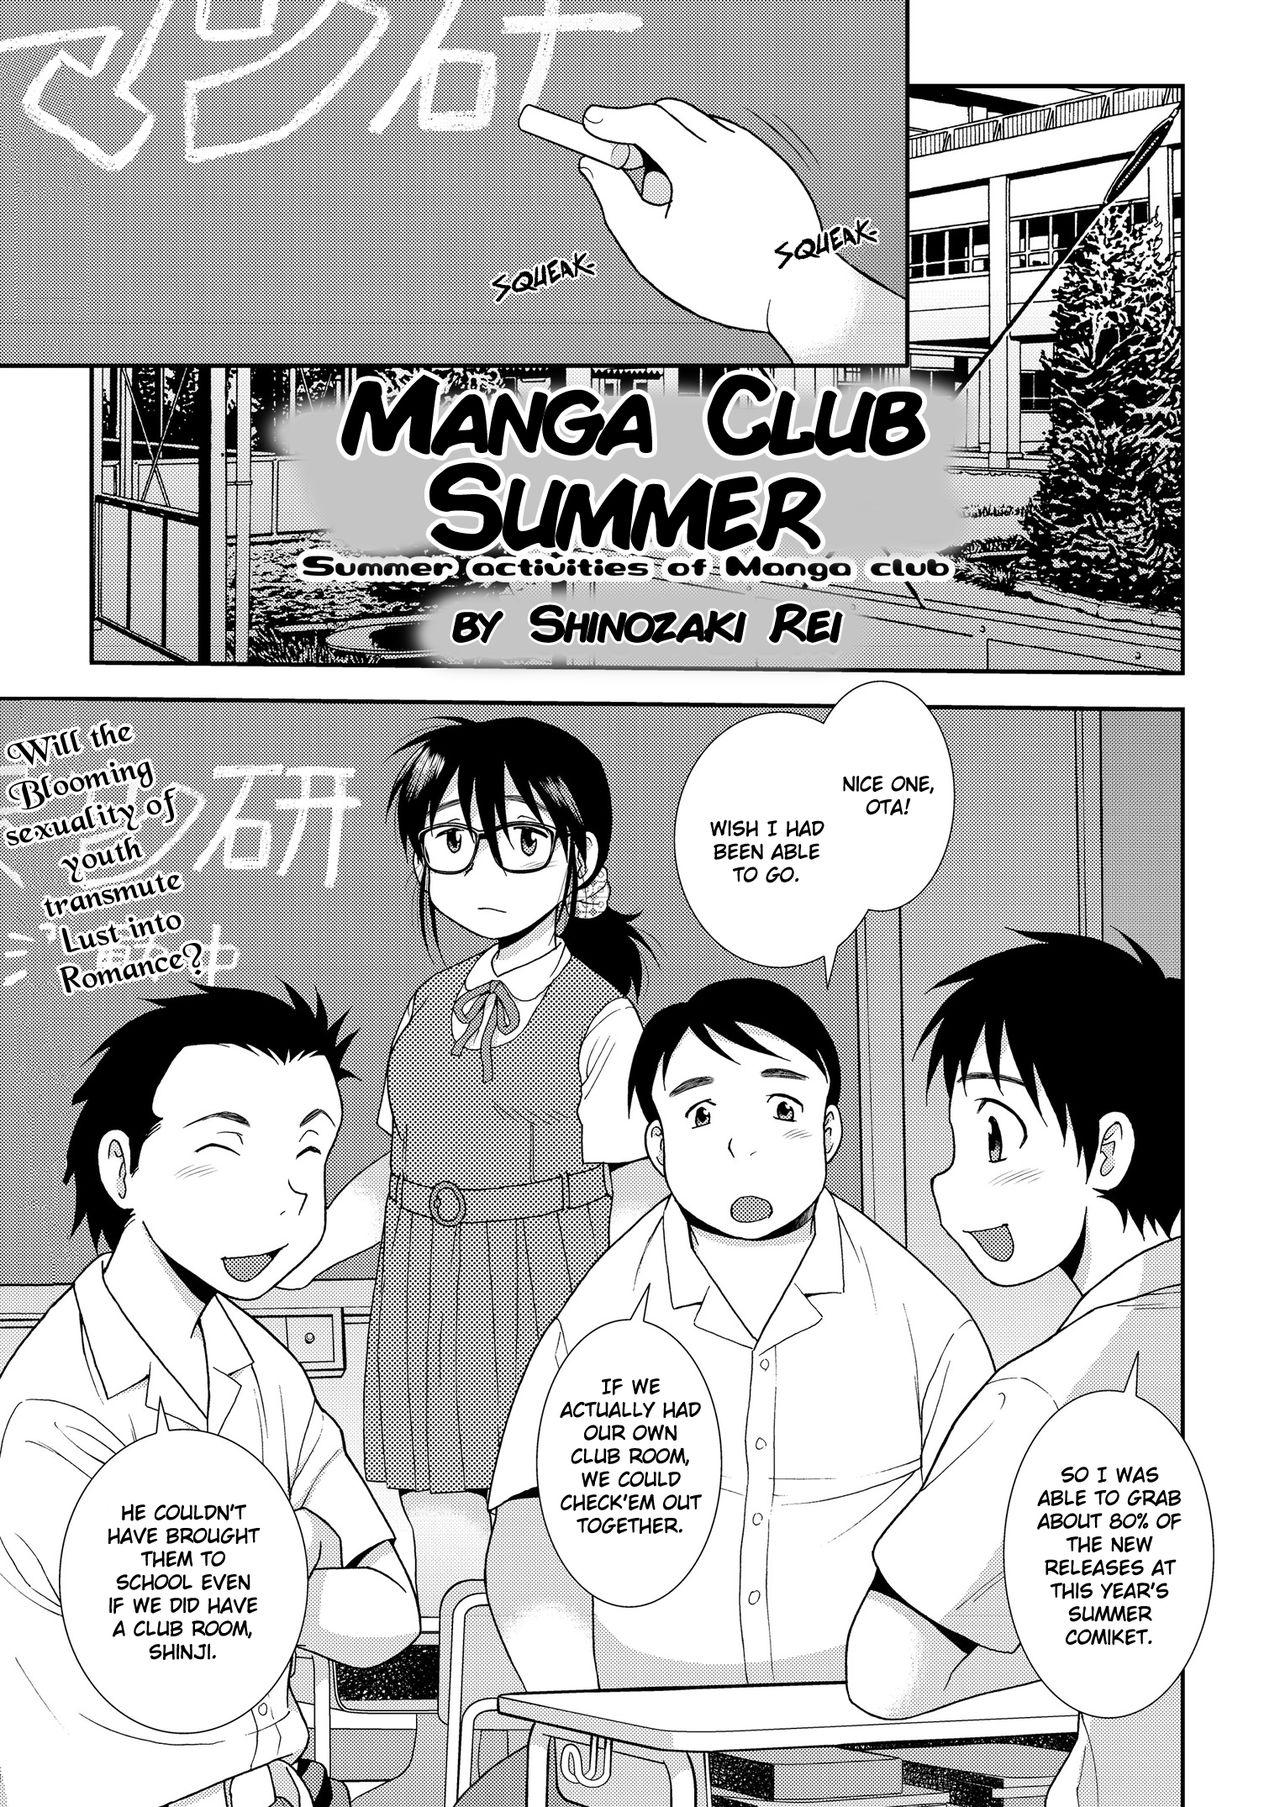 Reverse Mangaken no Natsu | Manga Club Summer Deutsch - Picture 1